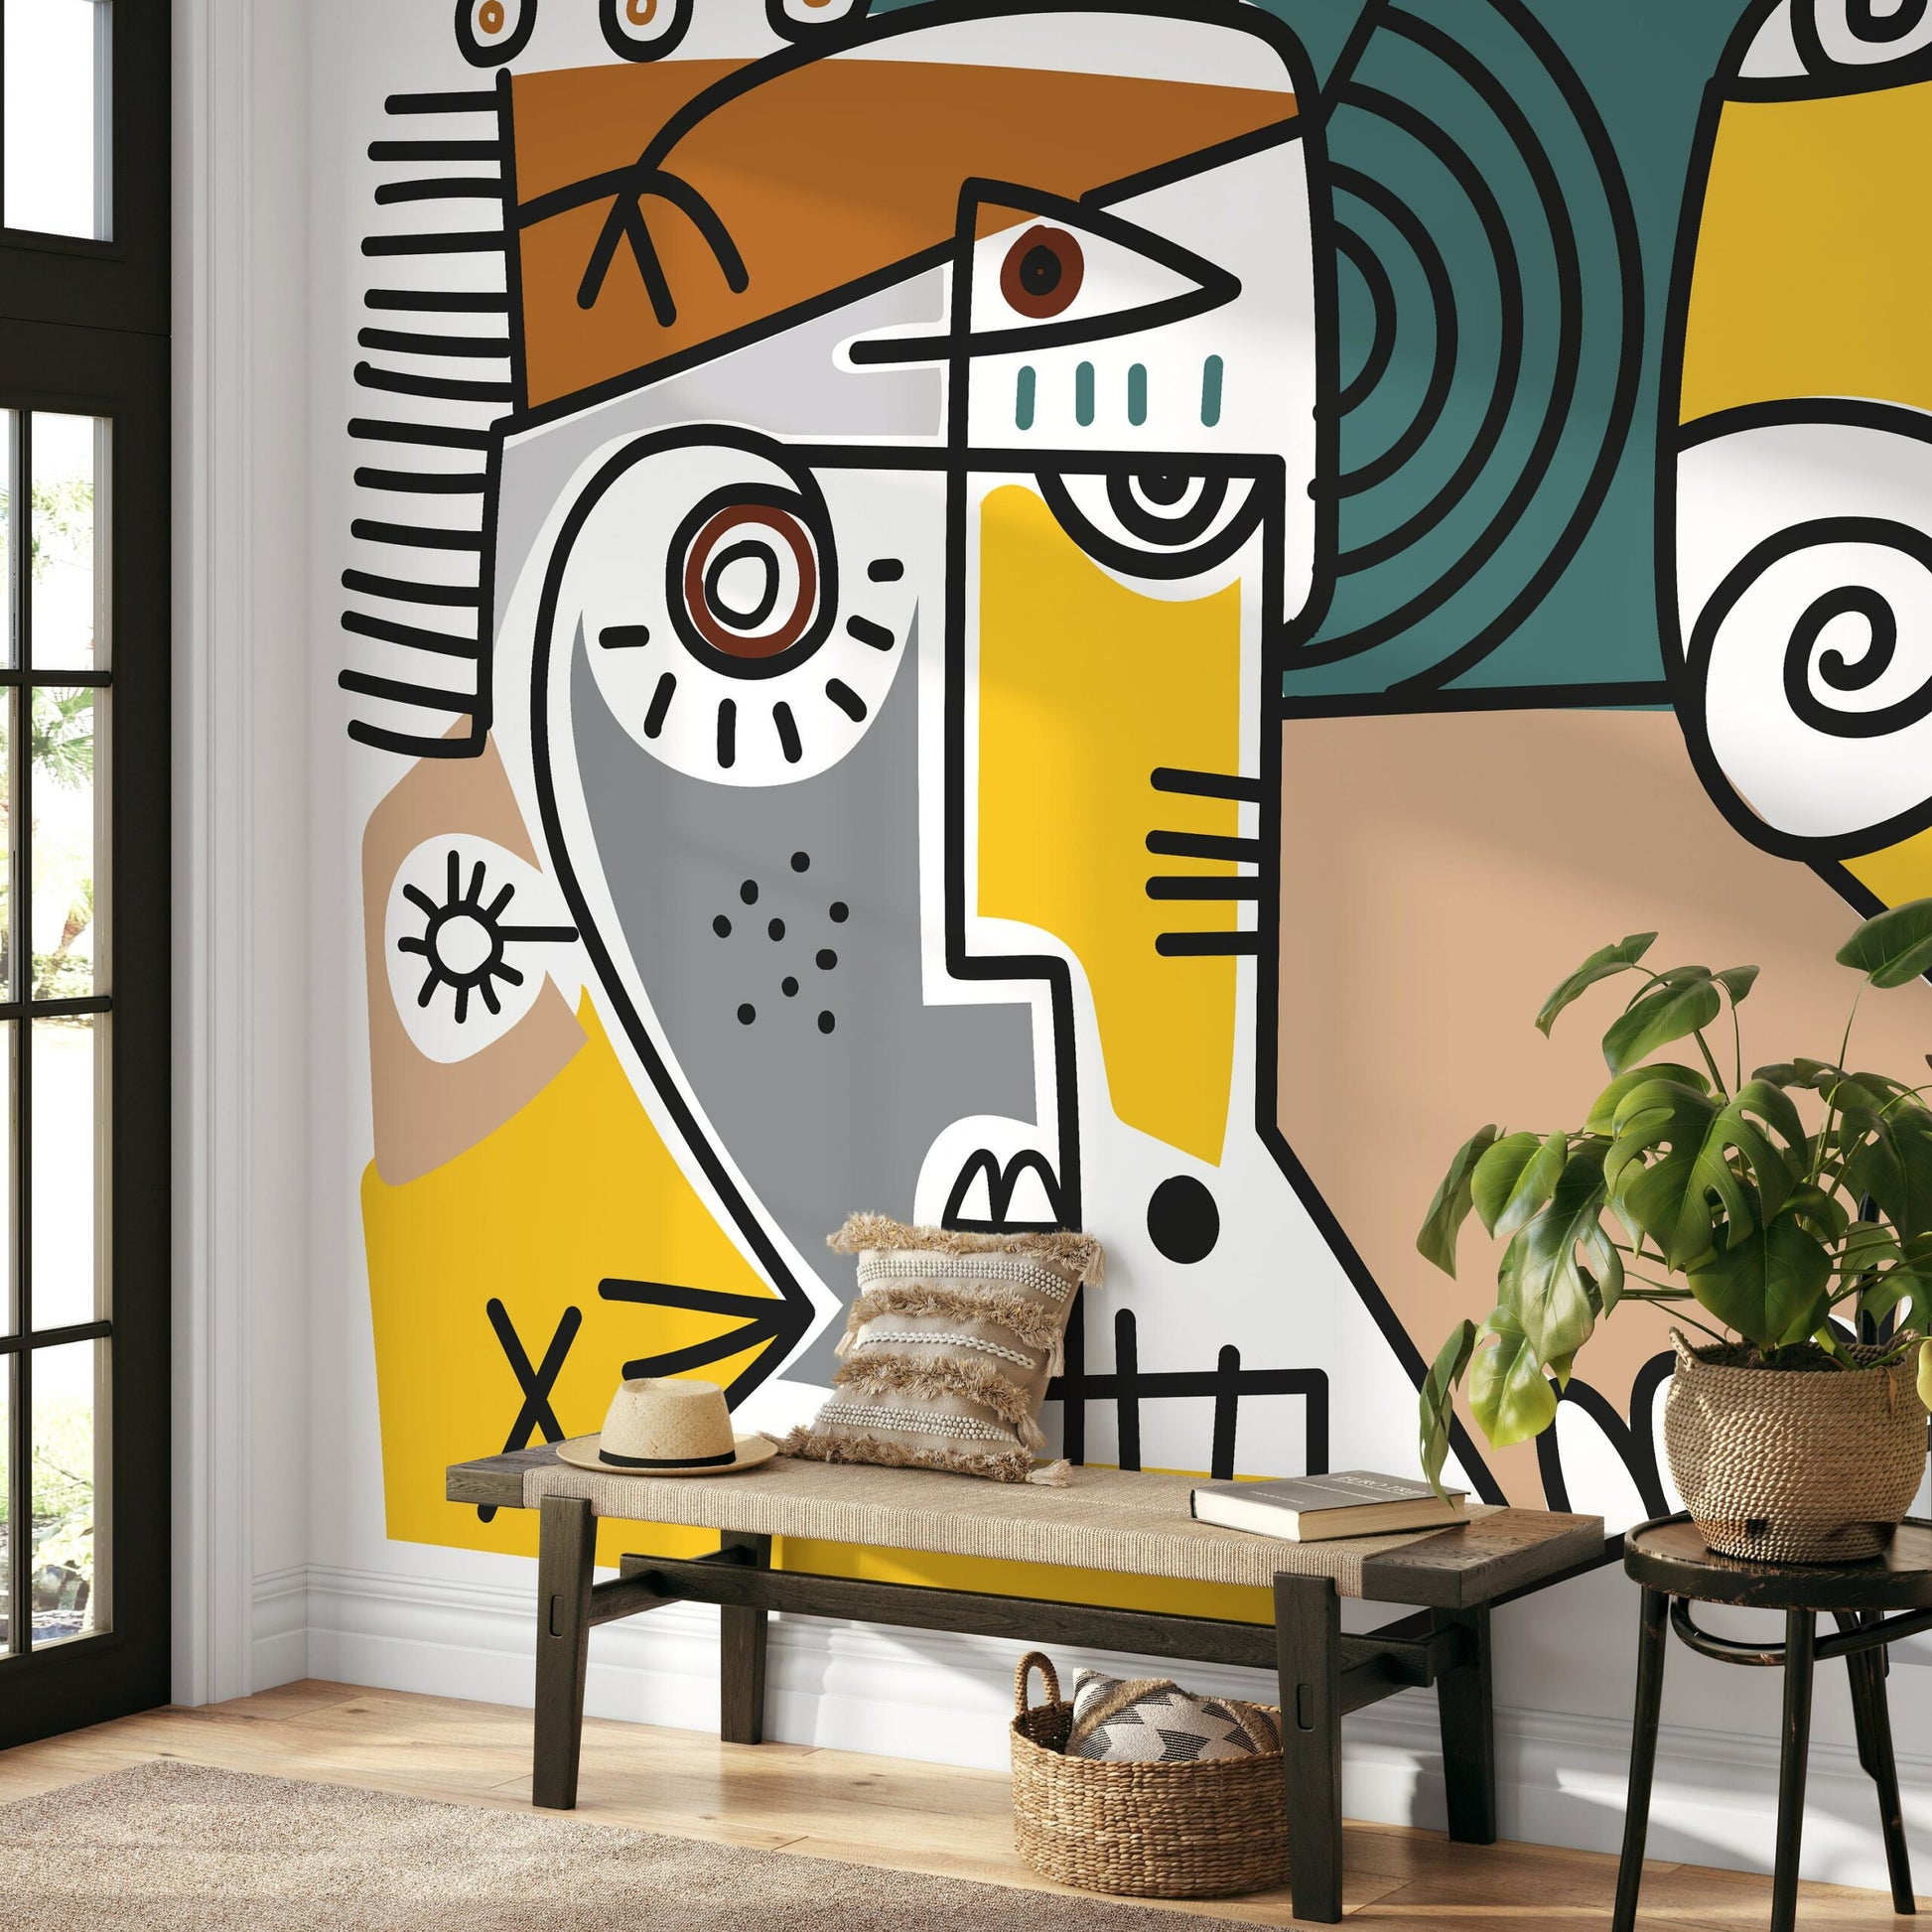 Modern Abstract Wallpaper Modern Mural Peel and Stick Wallpaper Home Decor - D570